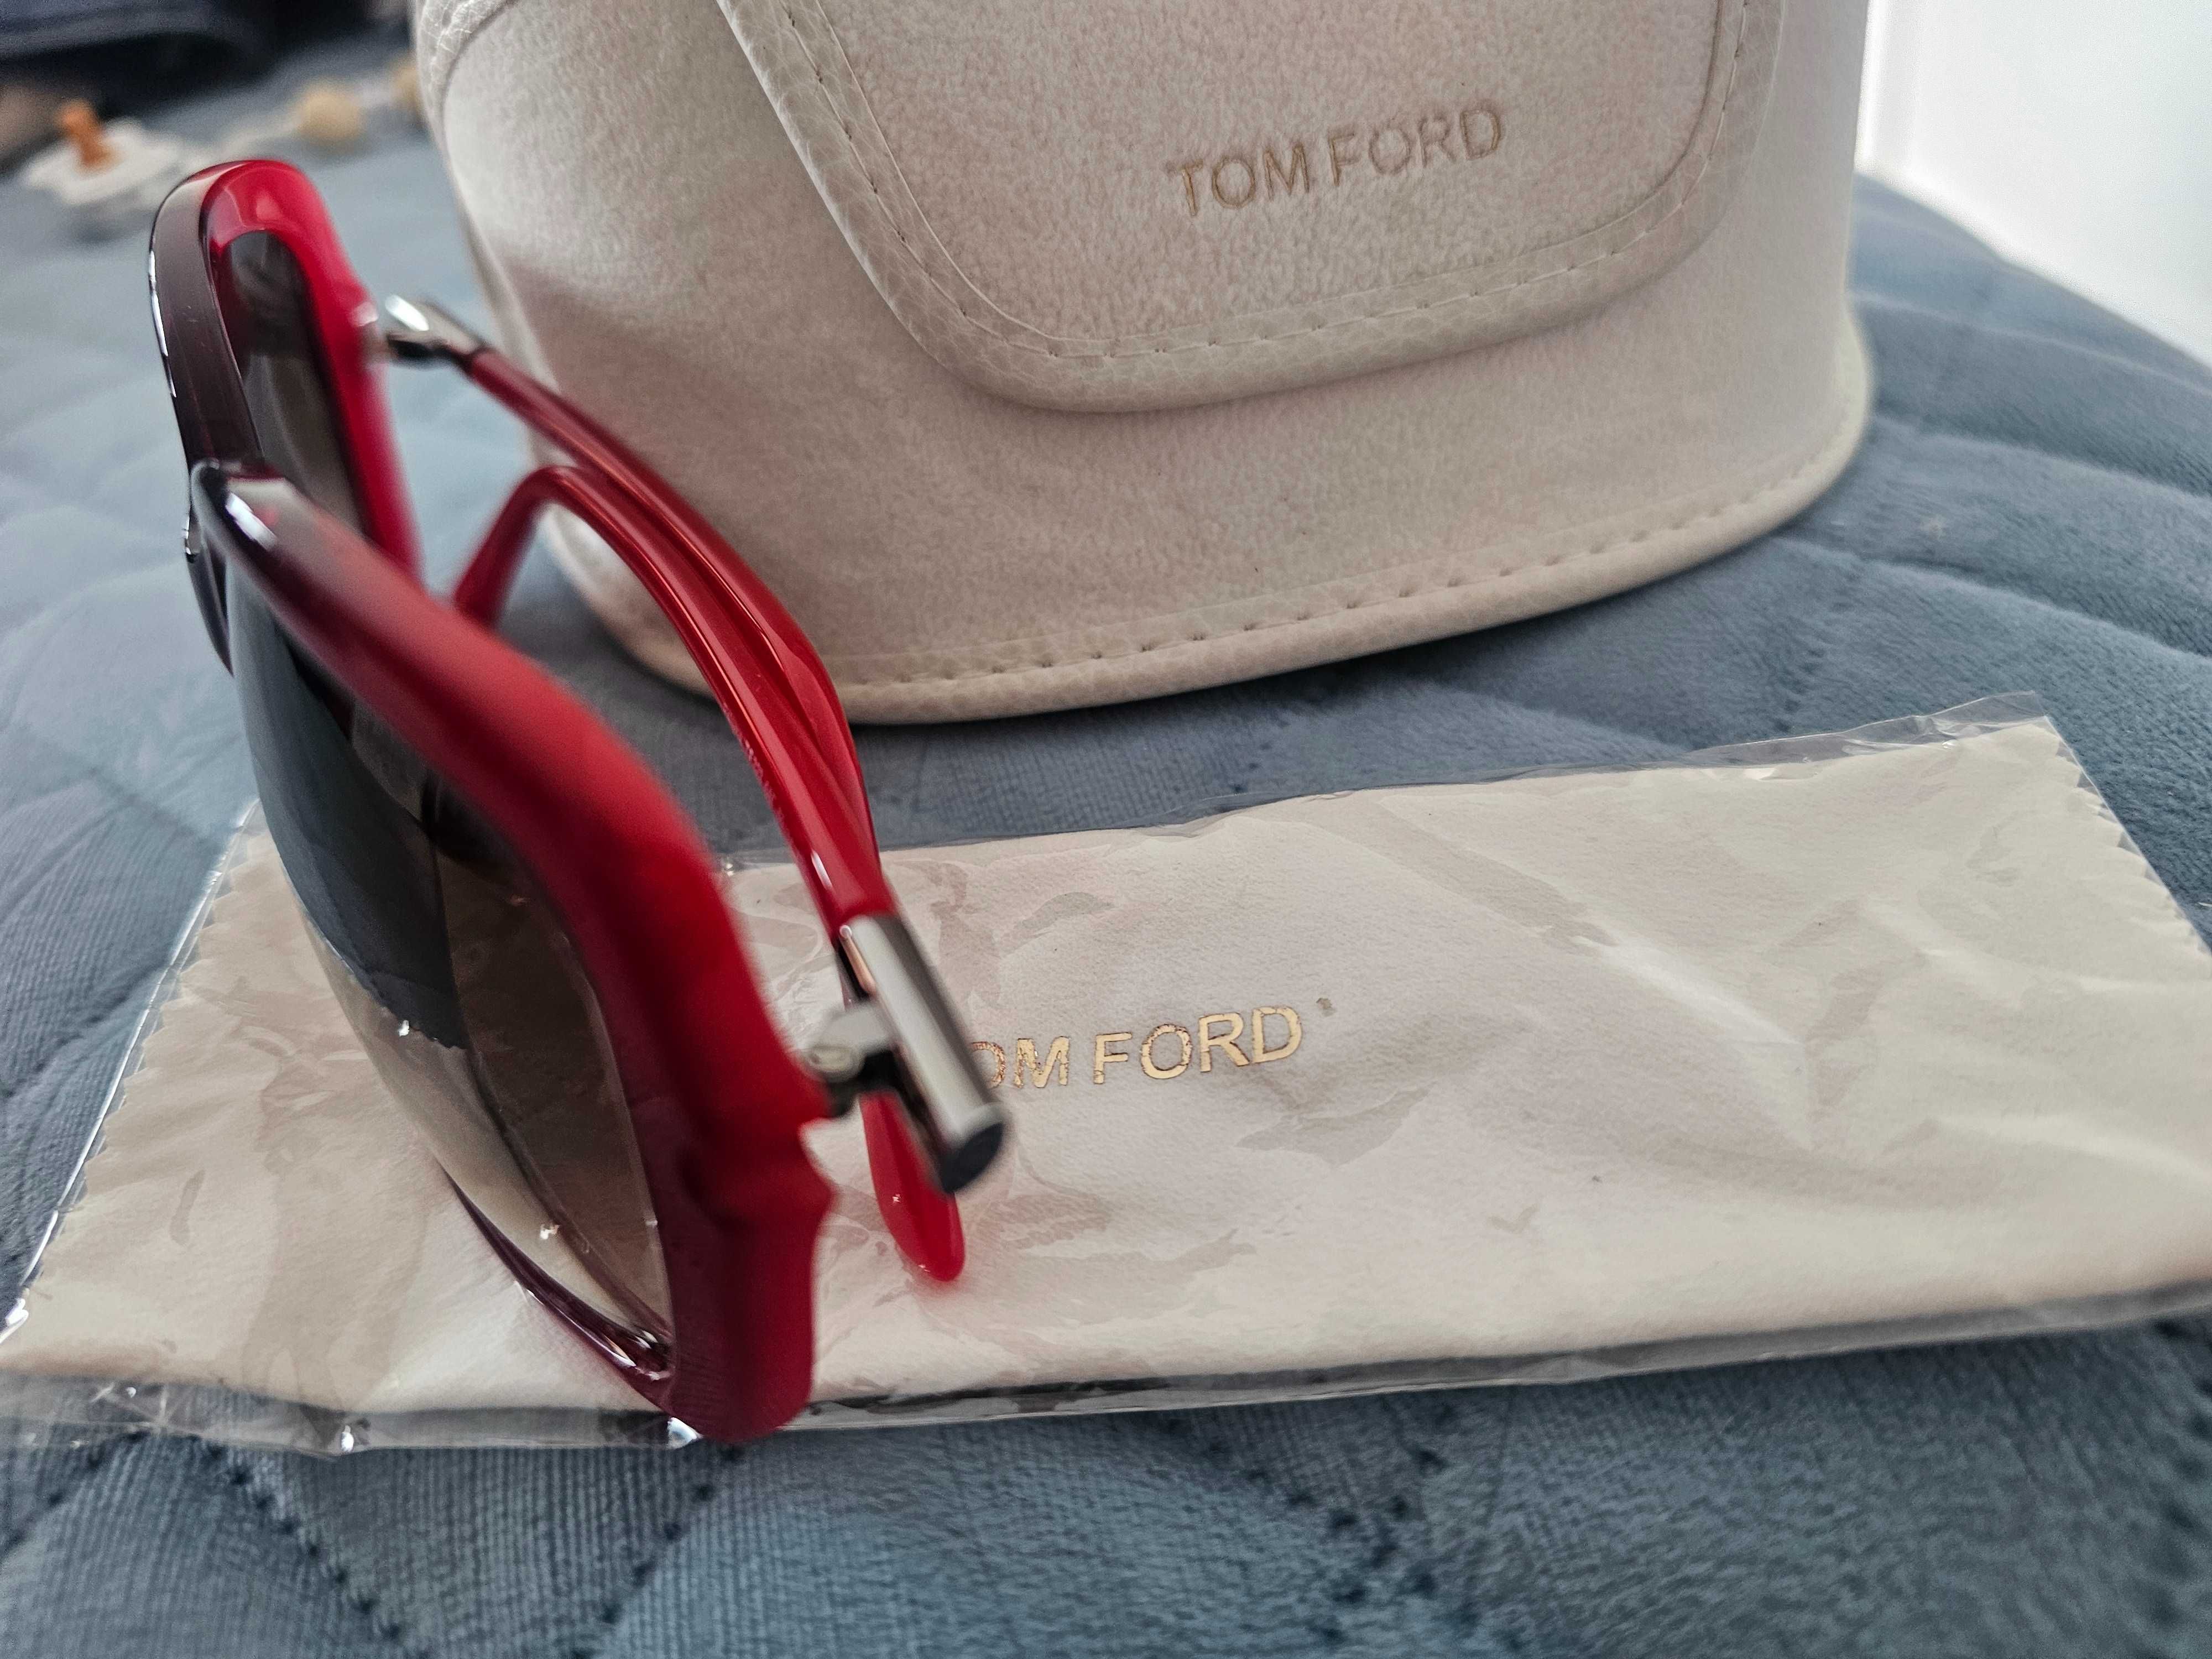 Óculos sol Tom Ford